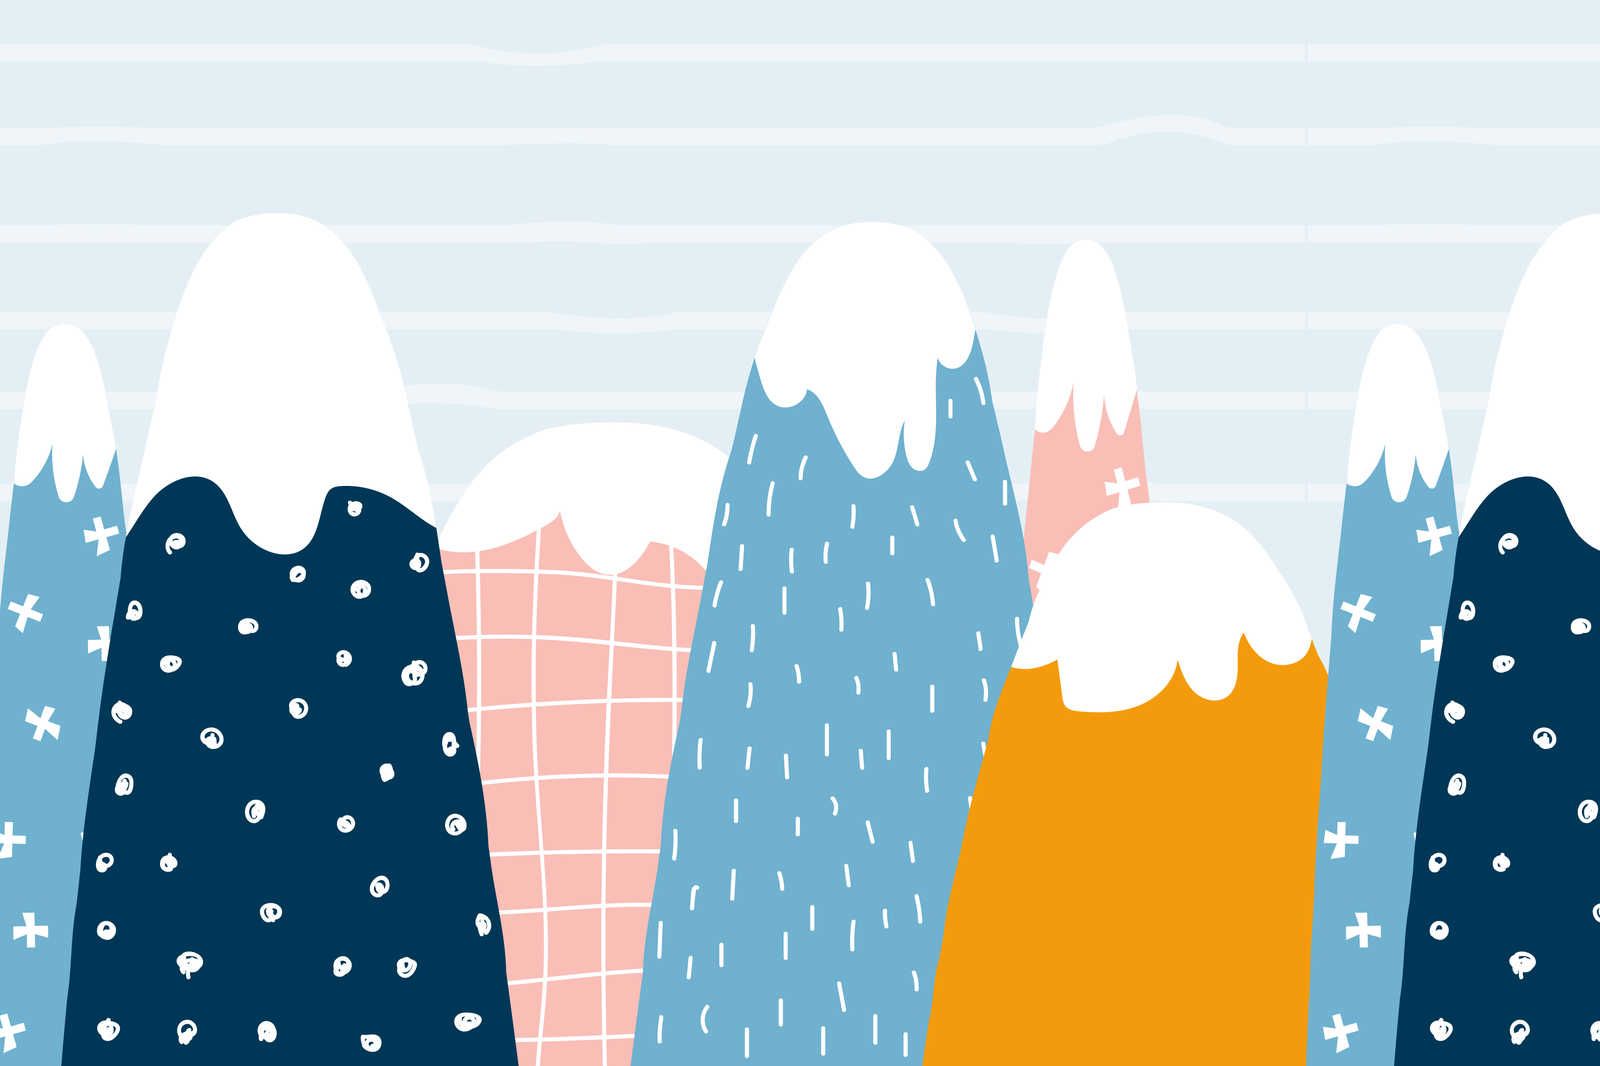             Leinwand mit verschneiten Hügeln im gemalten Stil – 90 cm x 60 cm
        